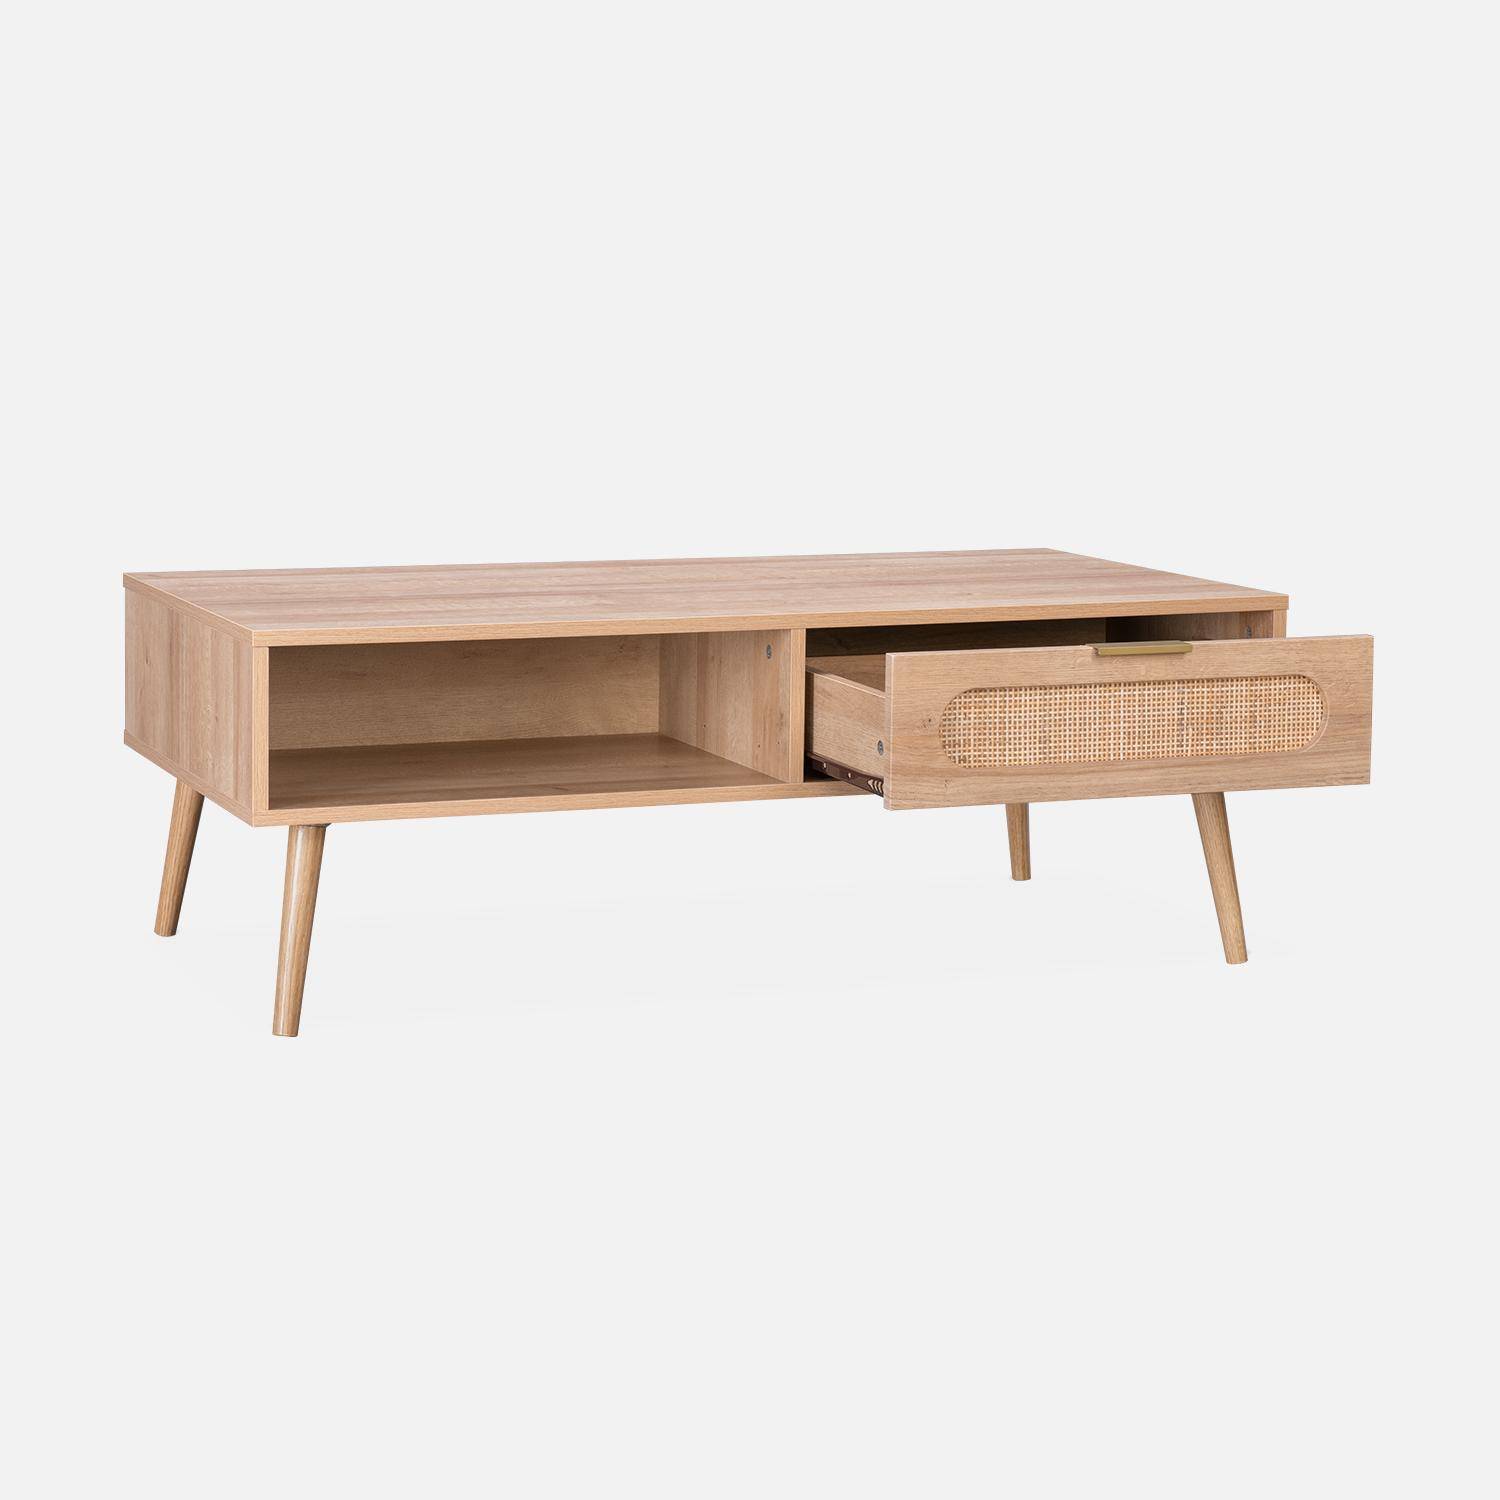 Table basse, Eva,  scandinave en cannage arrondi et en décor bois, 1 tiroir réversible L110 x l59 x H39cm Photo6